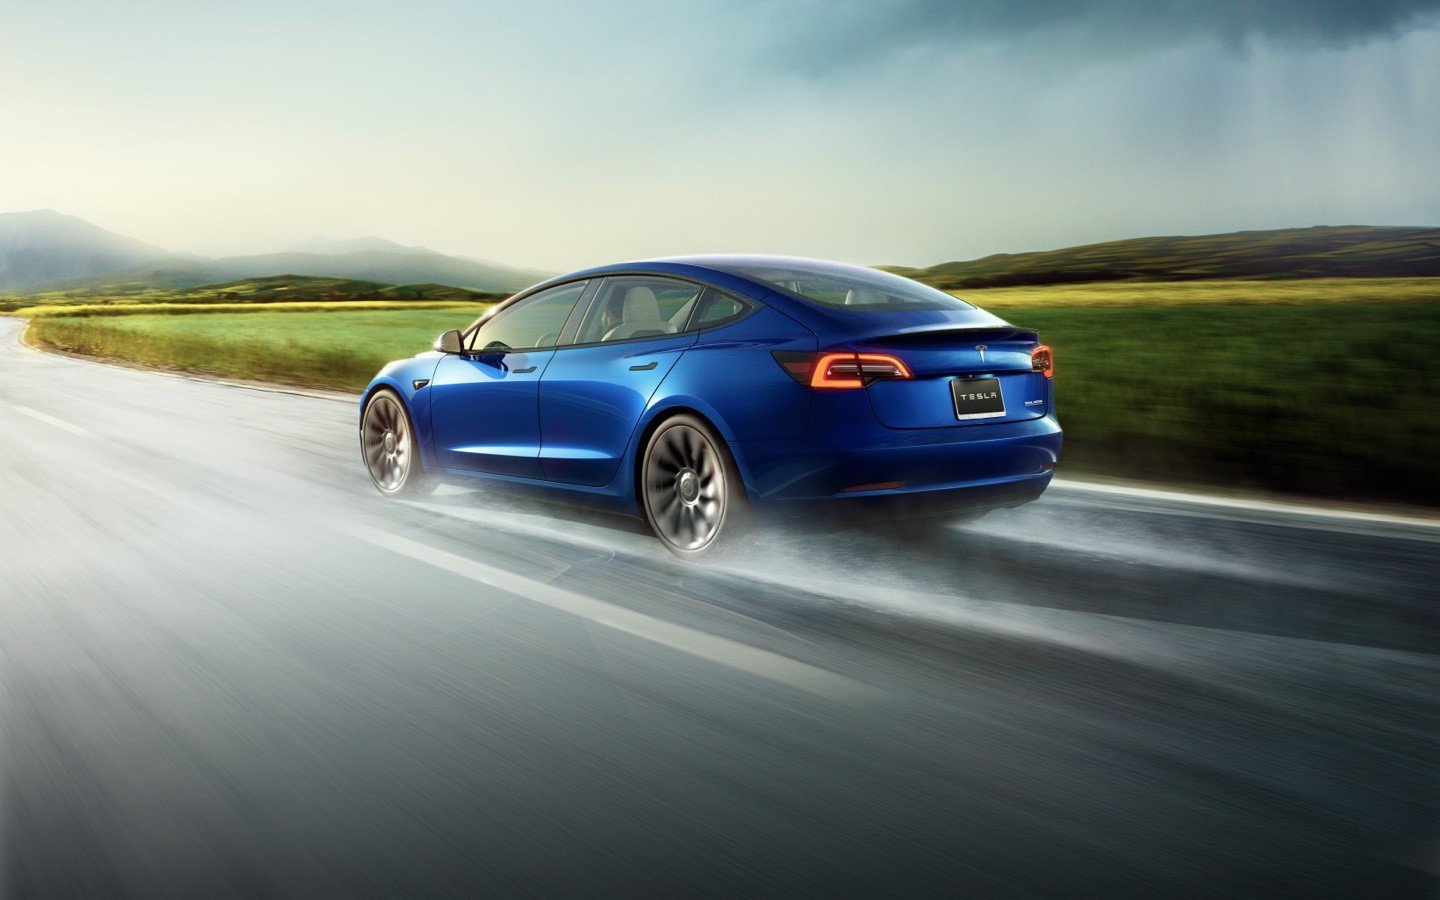  S-a lansat și în România! Cât costă cea mai ieftină mașină de la Tesla